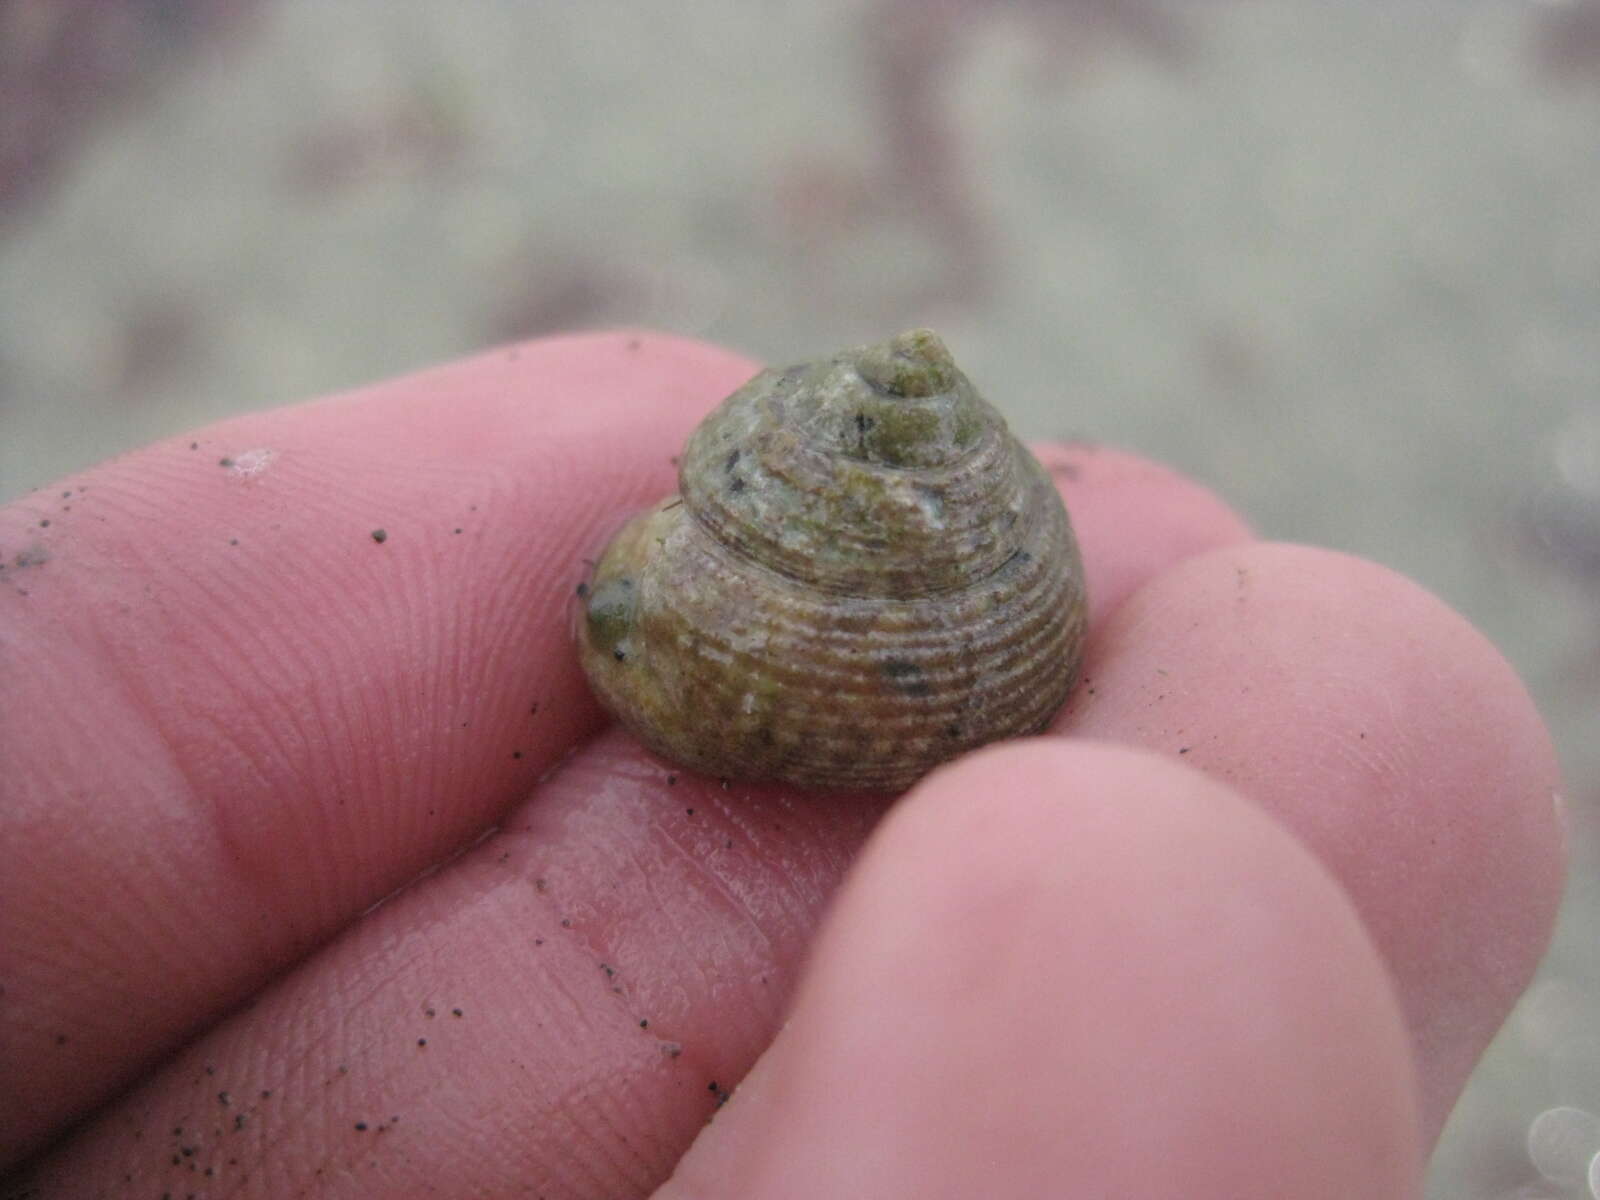 Image of Tiara Top Snail